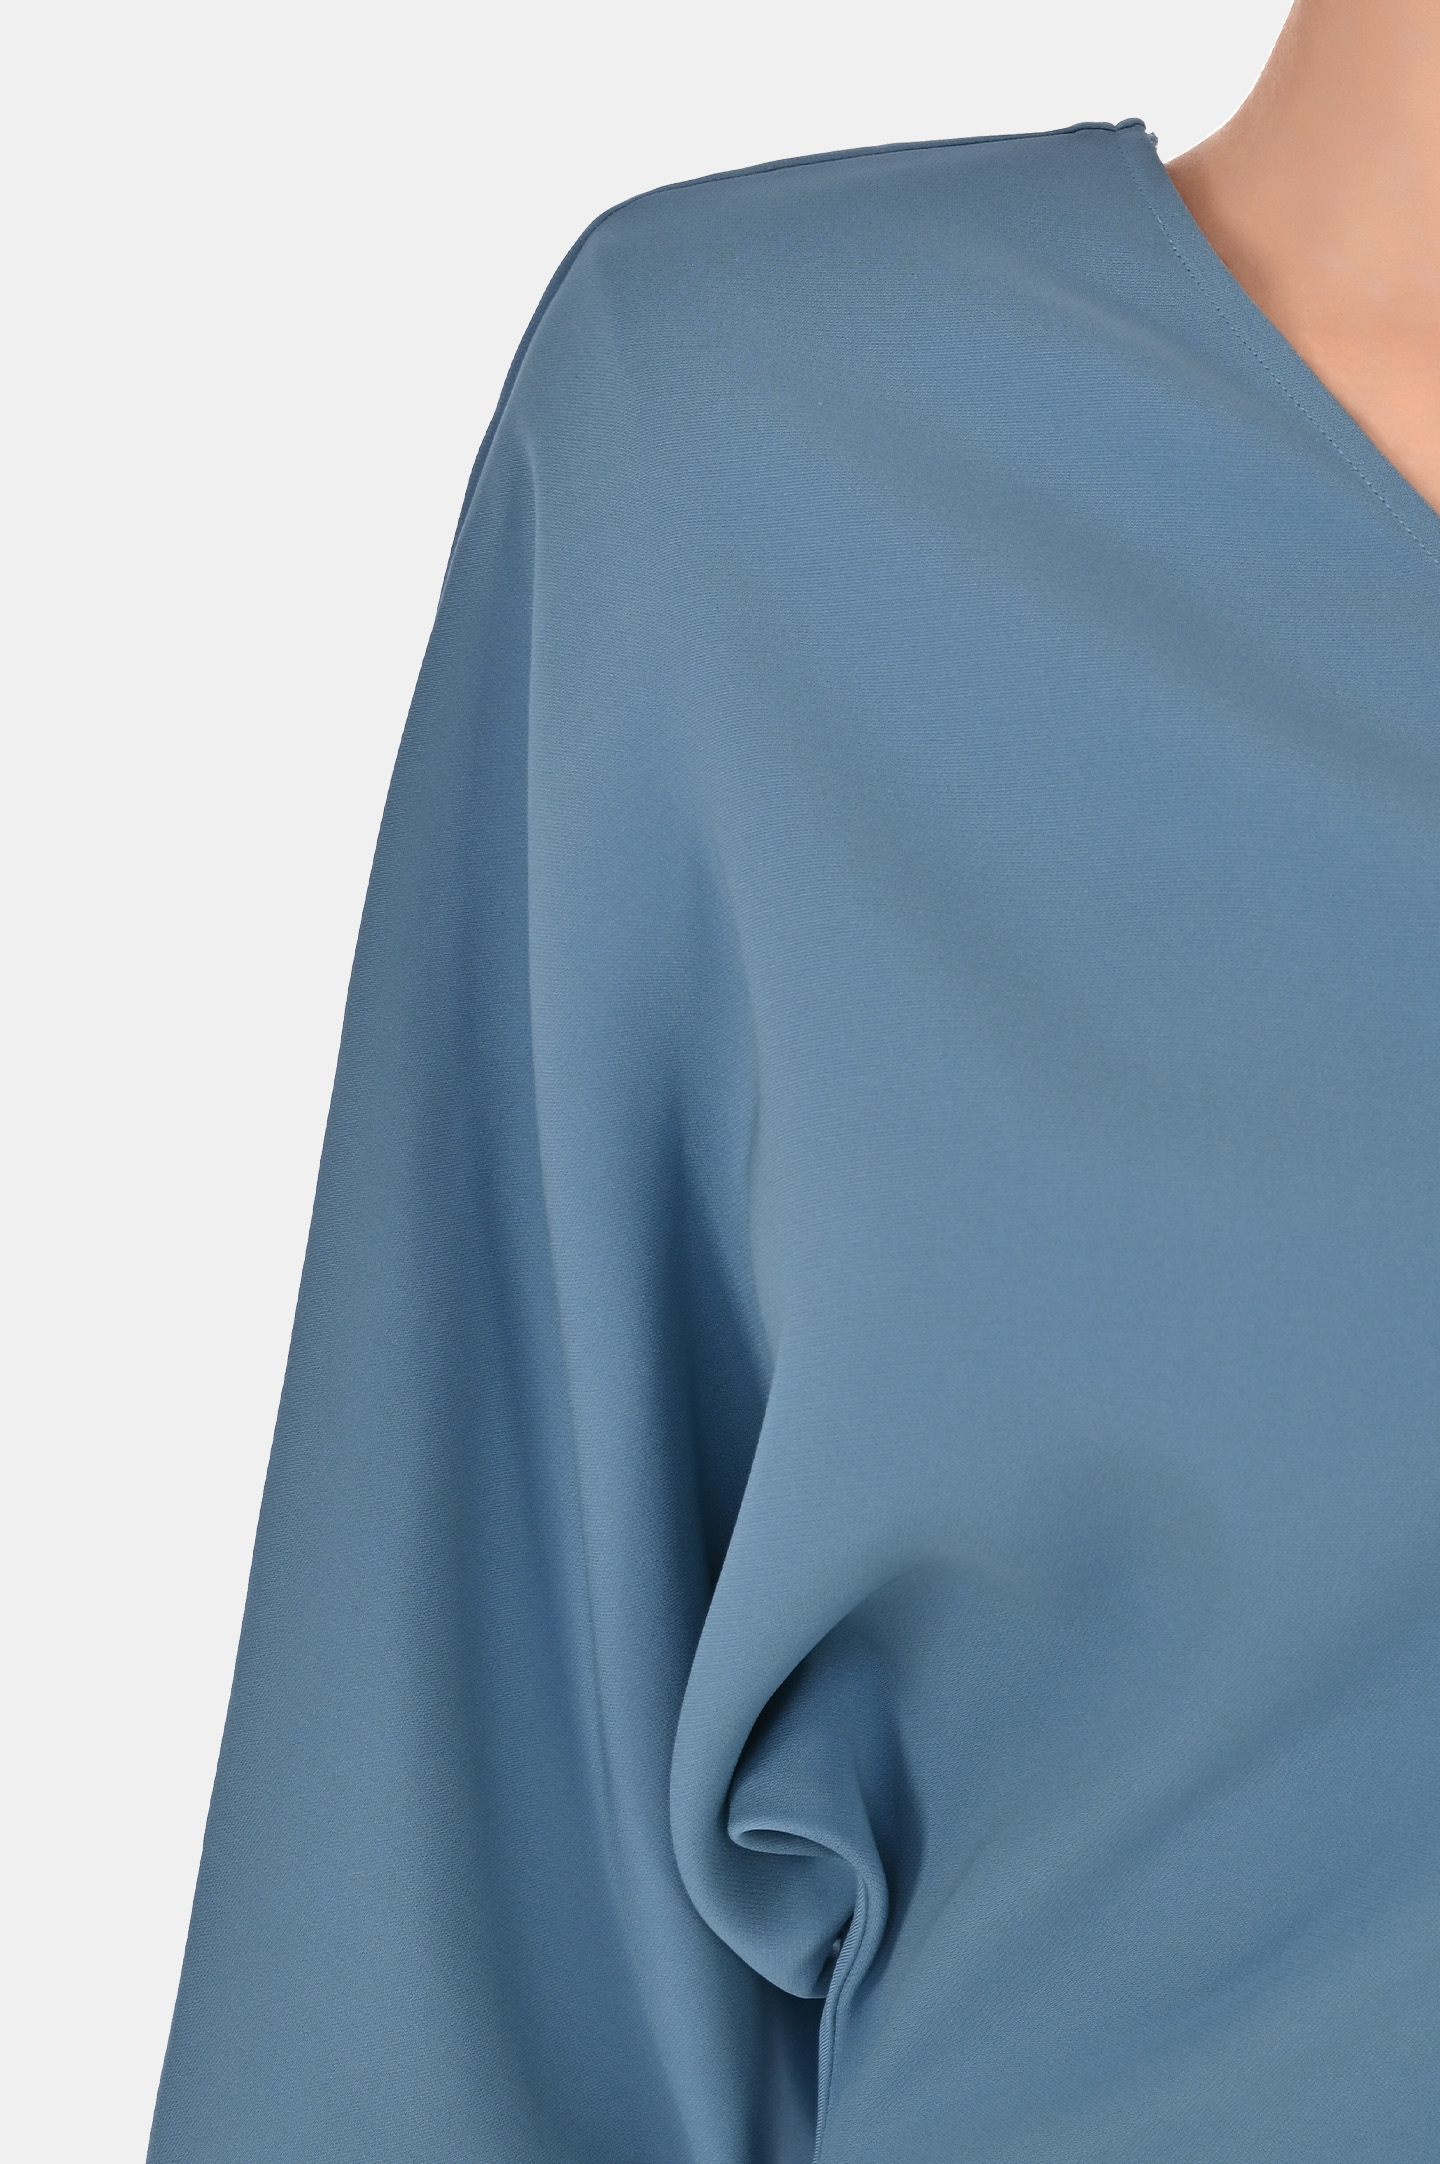 Платье из шелка и эластана с открым плечом JACOB LEE WSD005SS24JB, цвет: Голубой, Женский